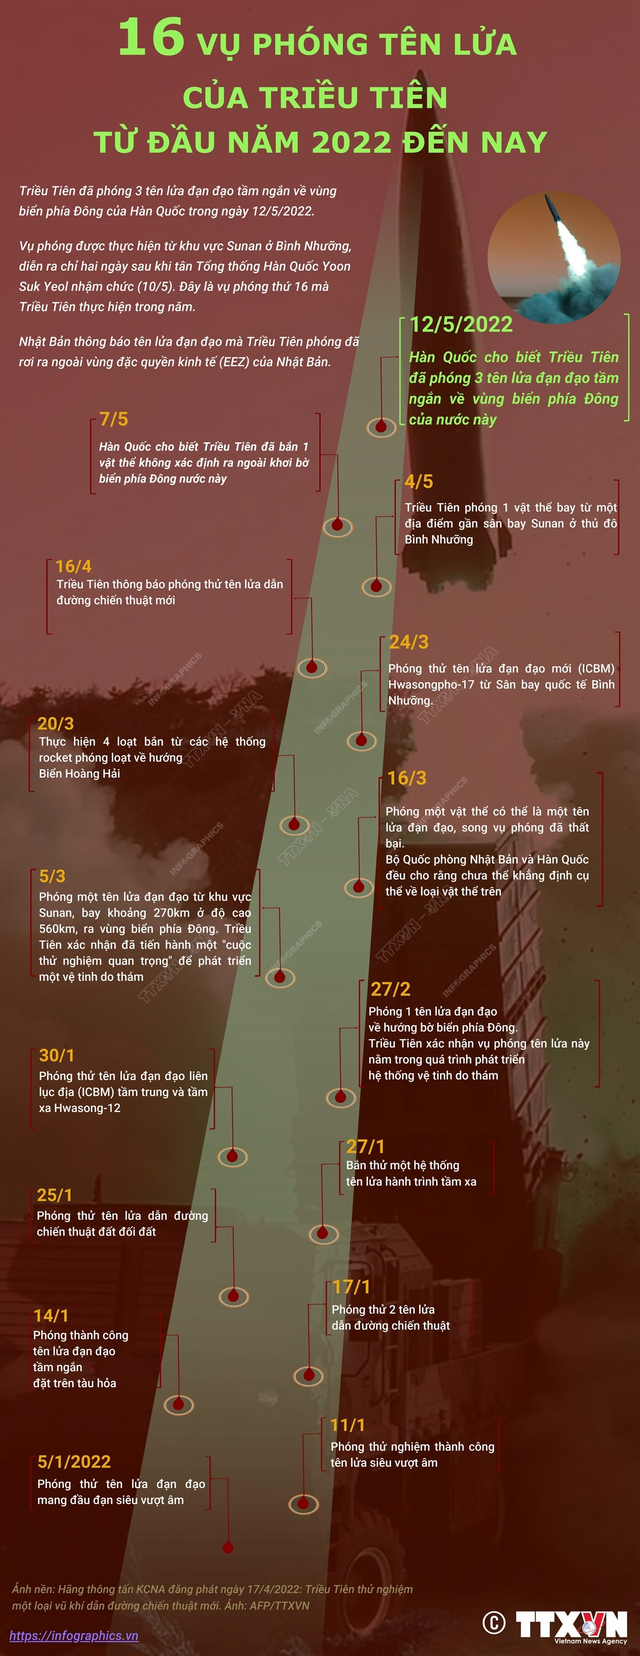 [Infographic] 16 vụ phóng tên lửa của Triều Tiên từ đầu năm 2022 đến nay - Ảnh 1.